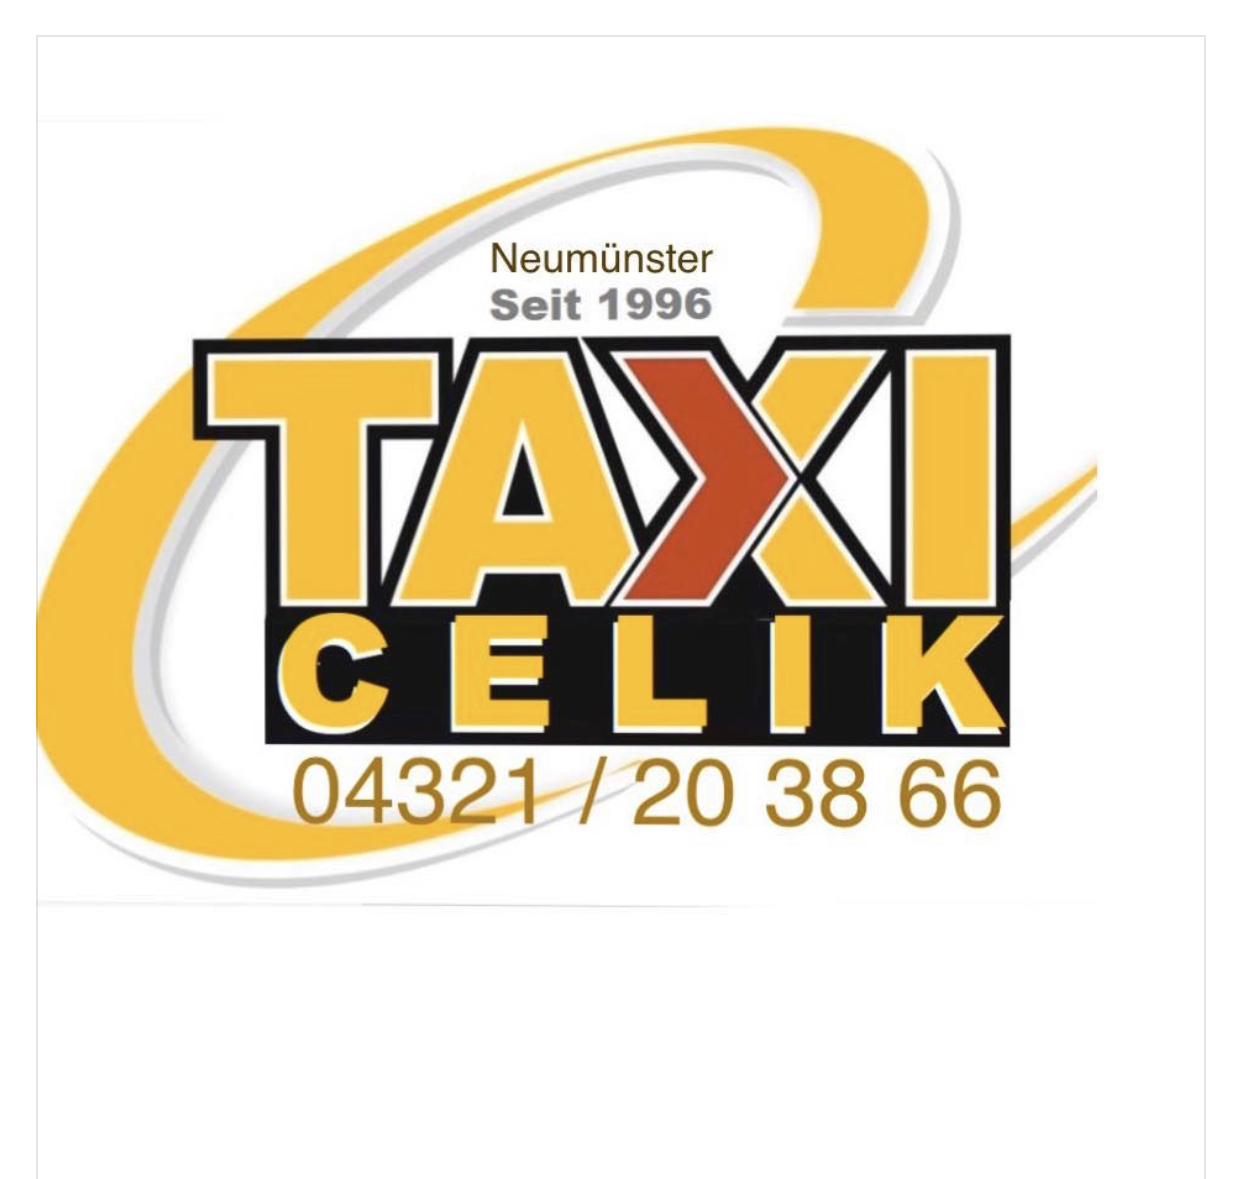 Bild 1 Taxi Betrieb Celik in Neumünster